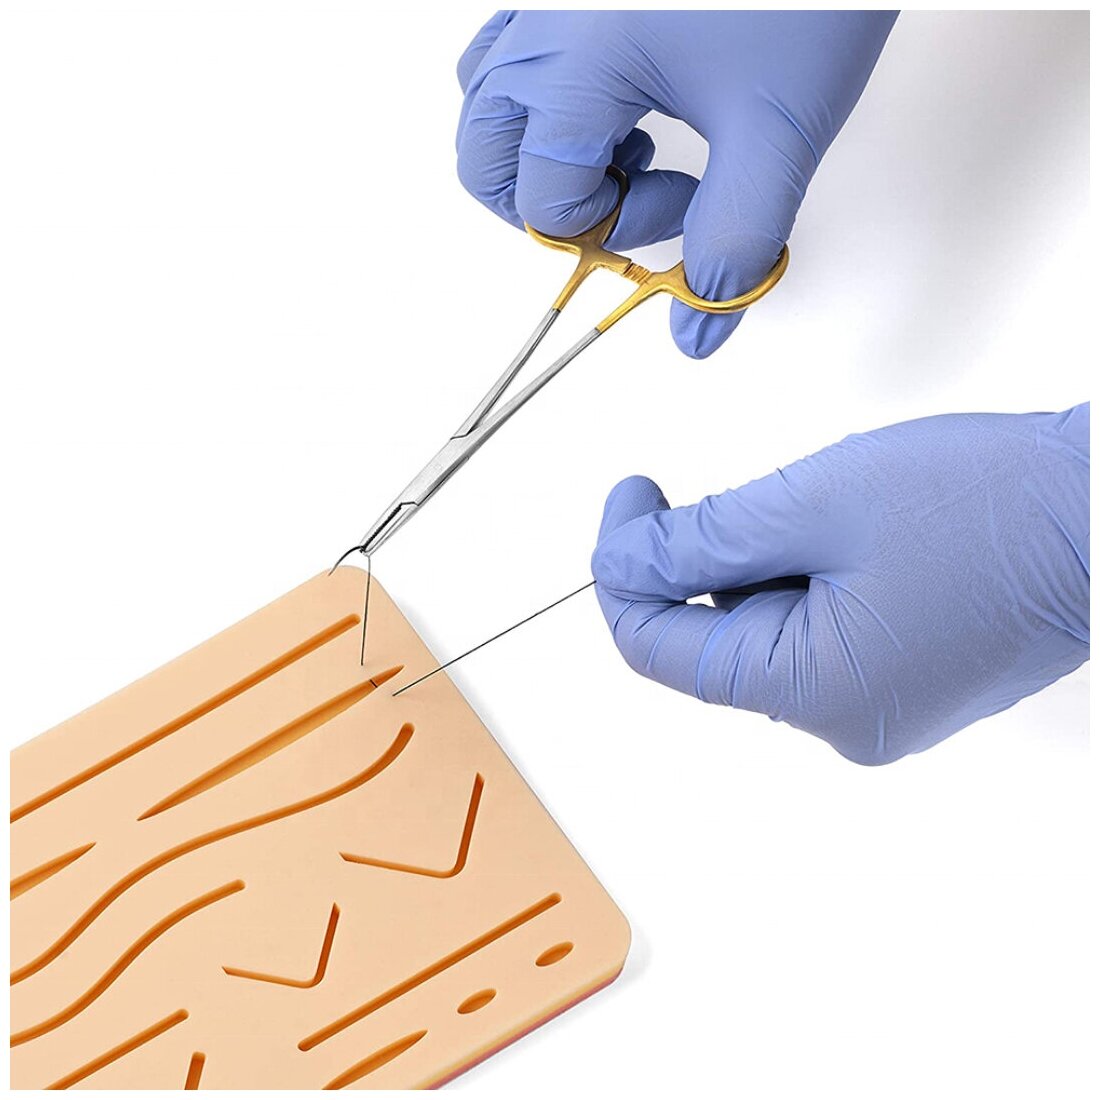 Хирургический тренажер Arma Dental Study Model для шитья, для отработки навыков наложения швов из силикона на подставке (симулятор кожи)